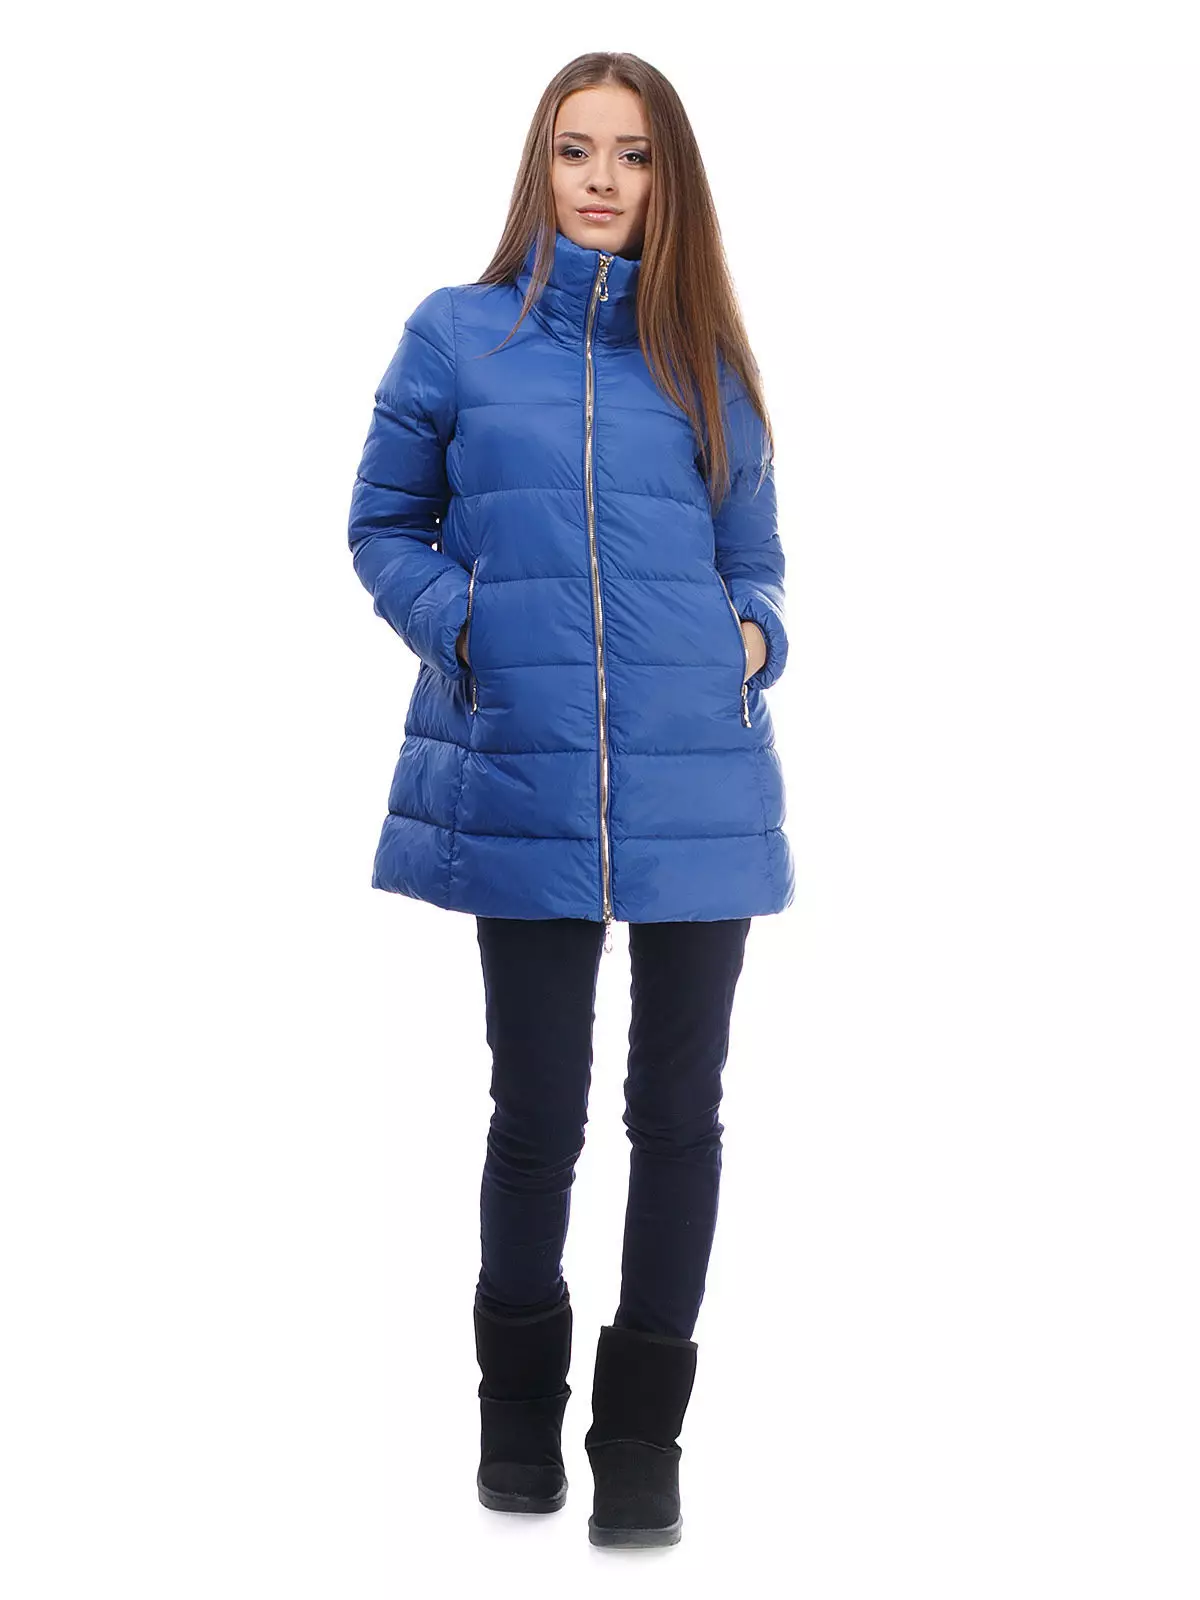 ブルージャケット（50枚の写真）：女性のモデル、身に着けている、ダークブルーのジャケット 426_45